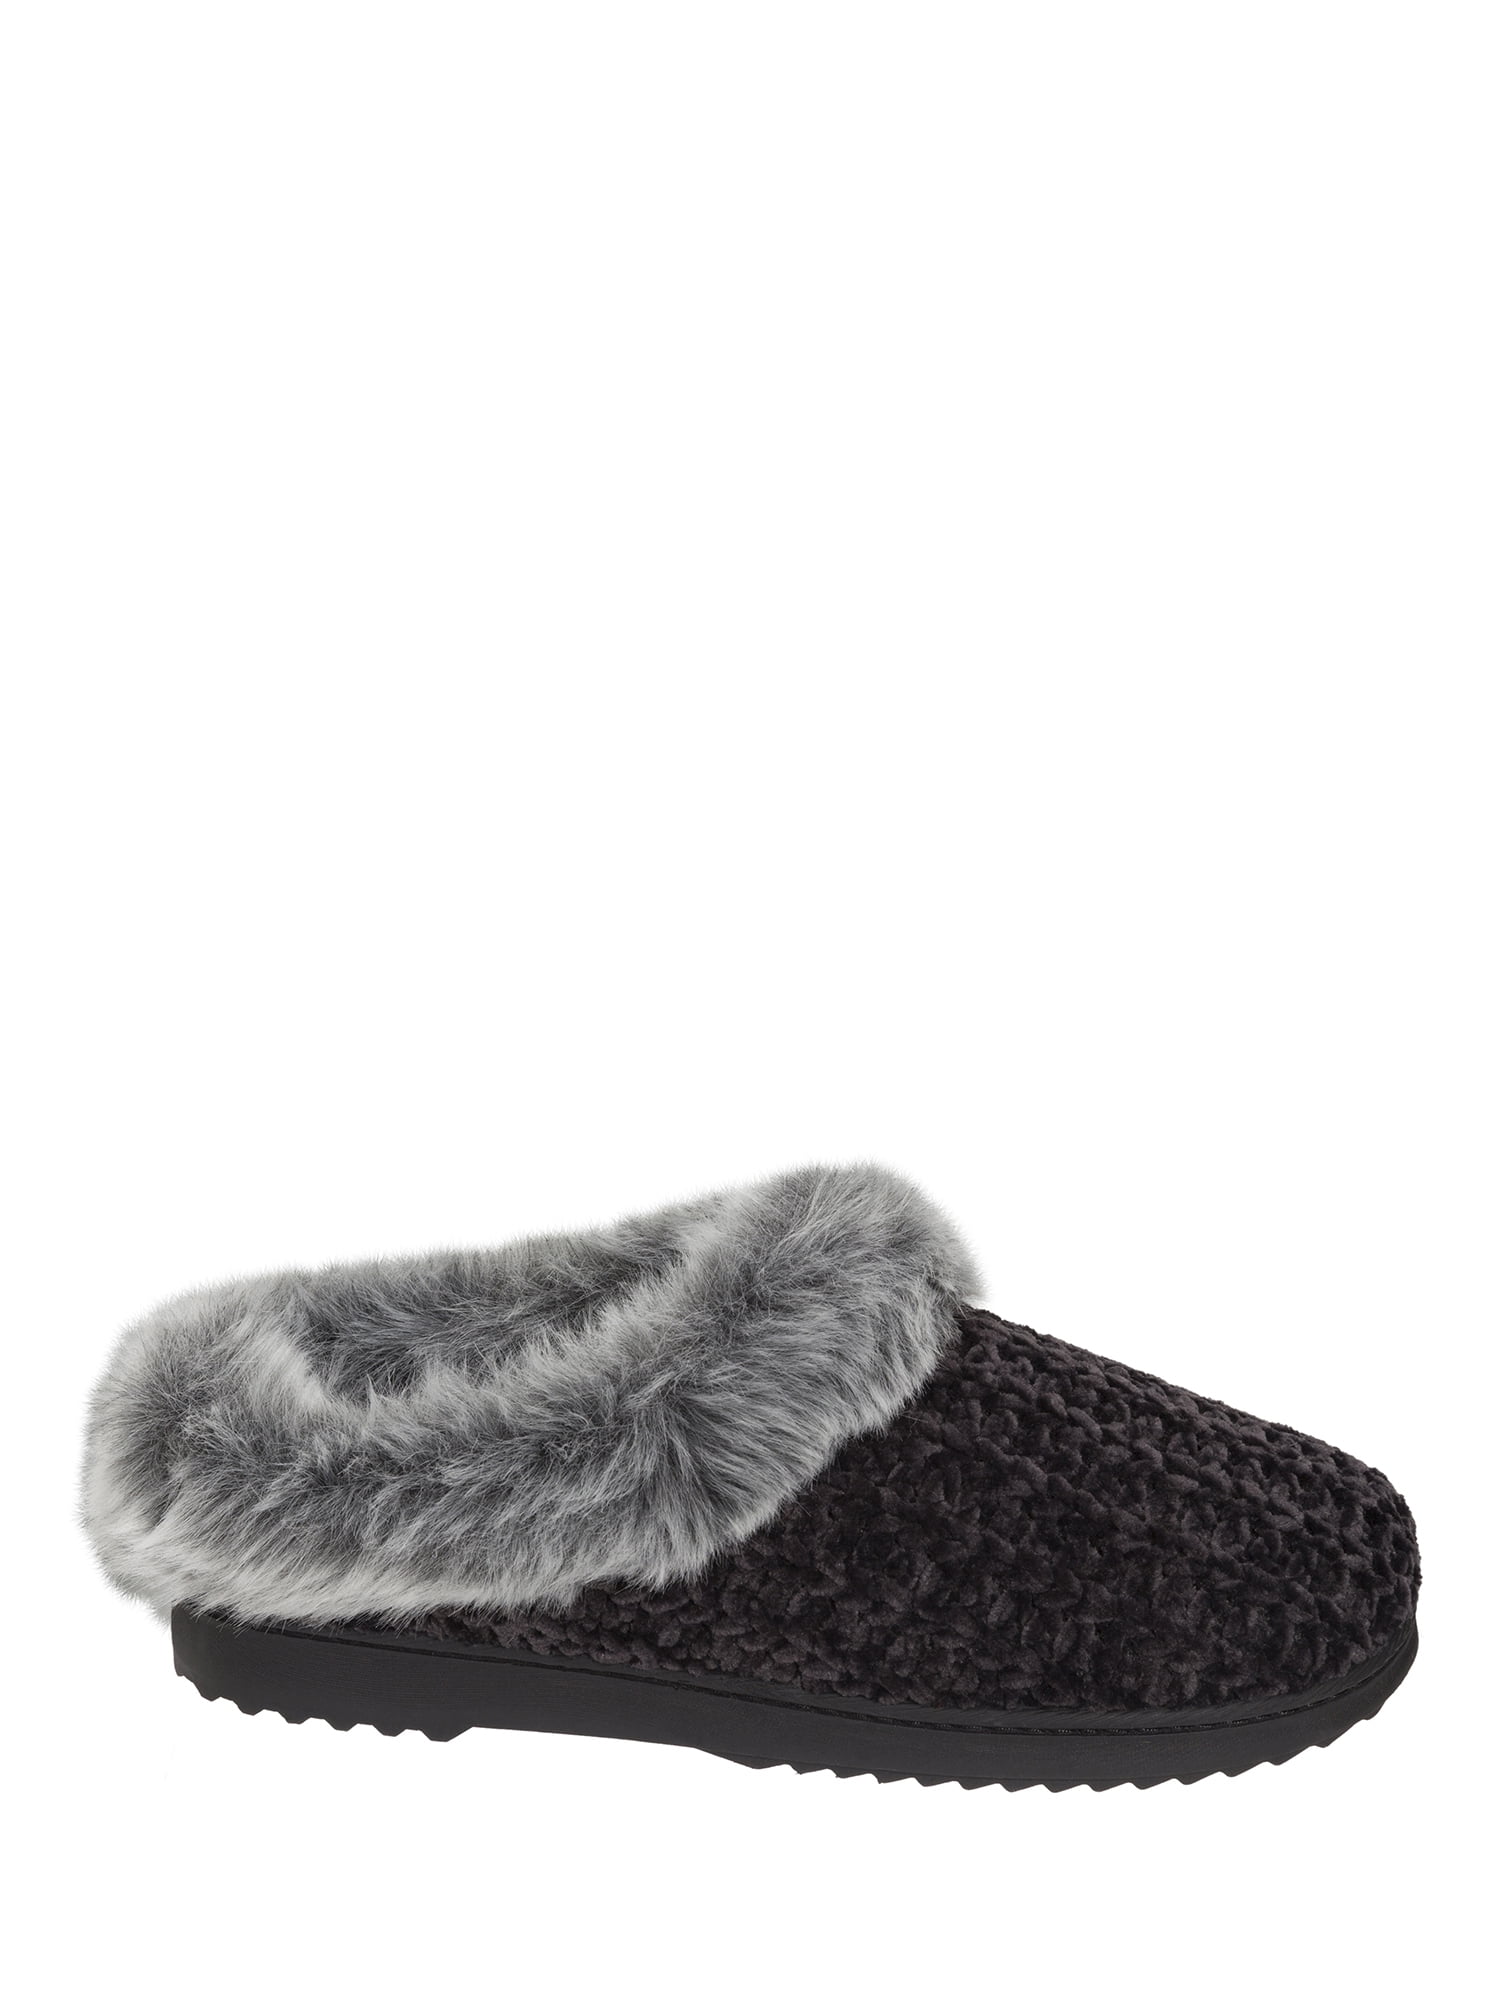 DF by Dearfoams Women's Velour Open Toe slippers - Walmart.com